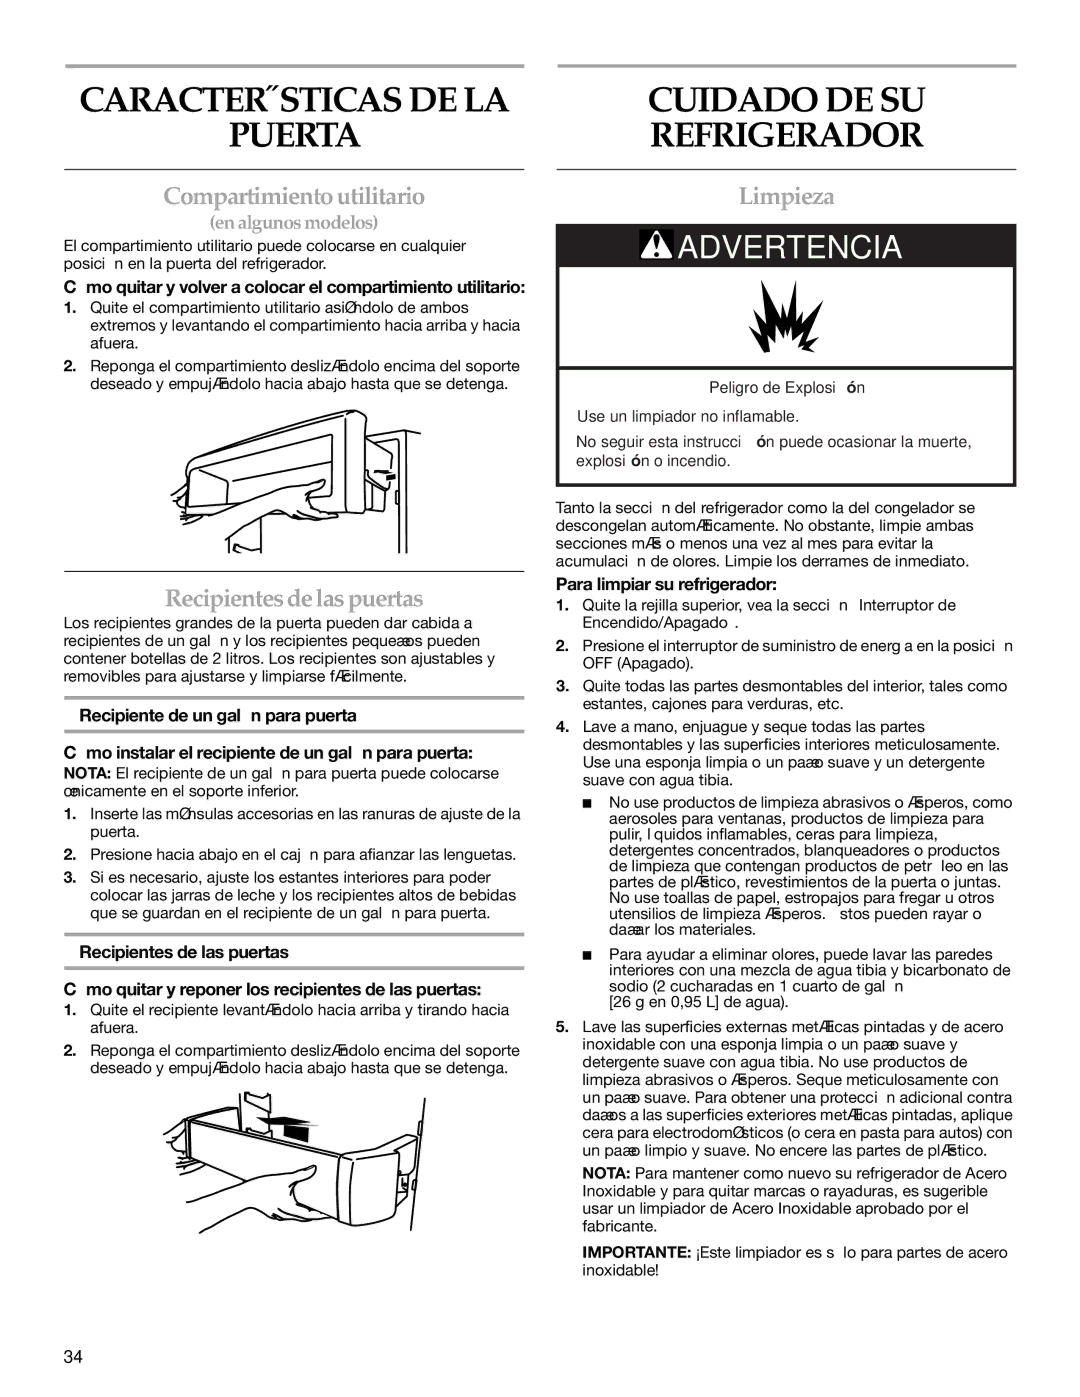 KitchenAid BUILT-IN REFRIGERATOR manual Características DE LA Puerta, Cuidado DE SU Refrigerador, Compartimiento utilitario 